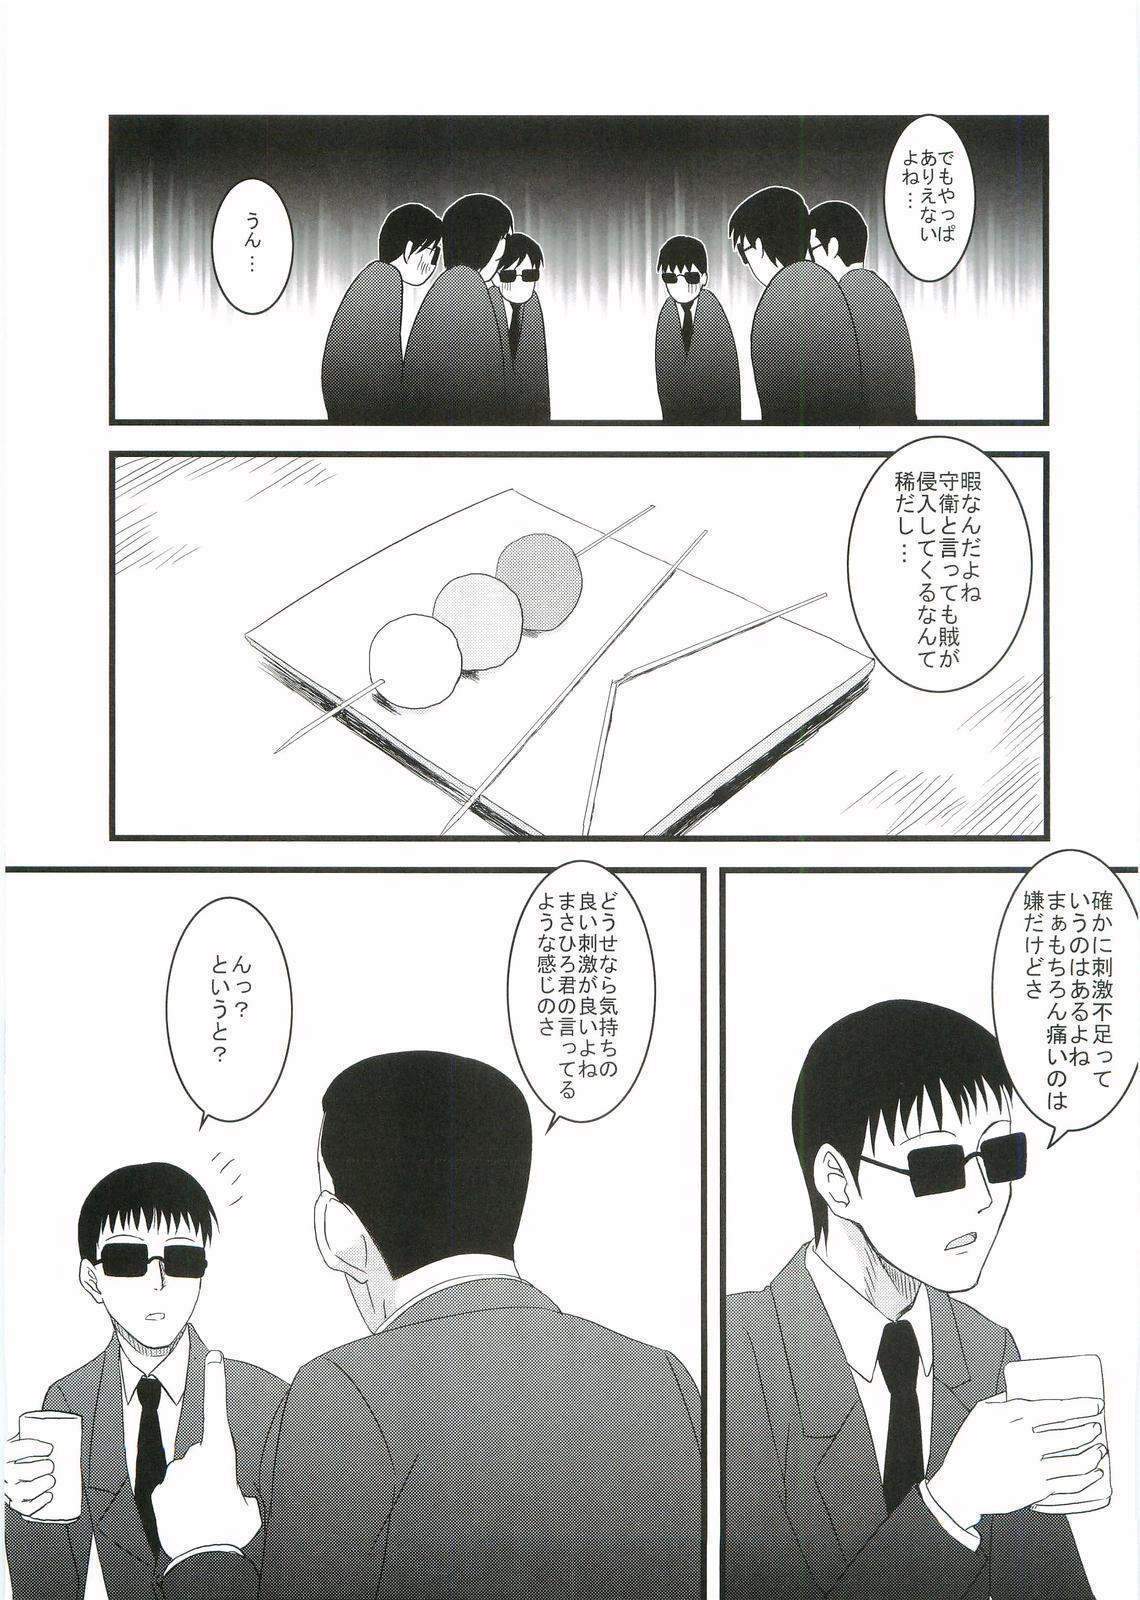 Shorts Kouhukuya no Ehon Gokujo 2 - Gokujou seitokai Gay Cash - Page 8